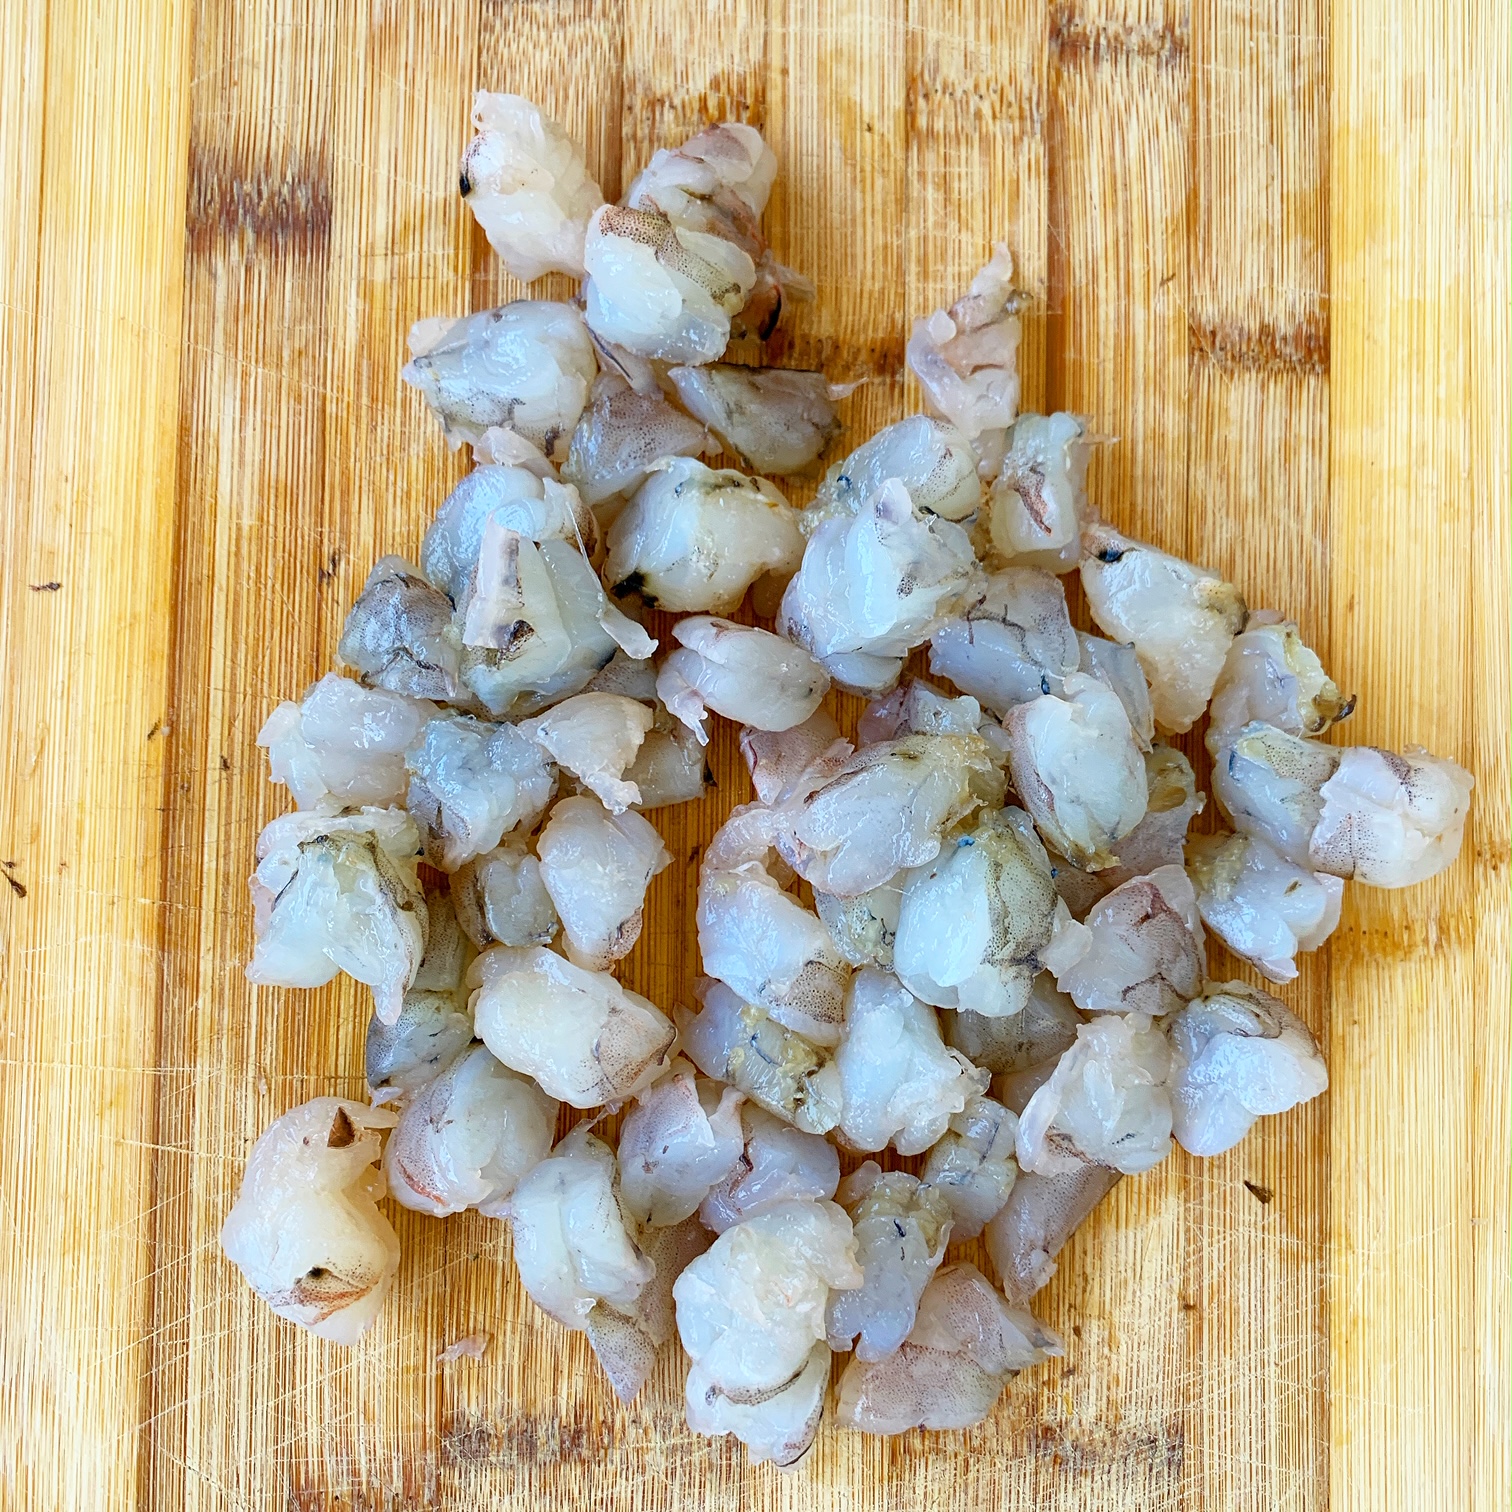 chopped shrimp on a cutting board